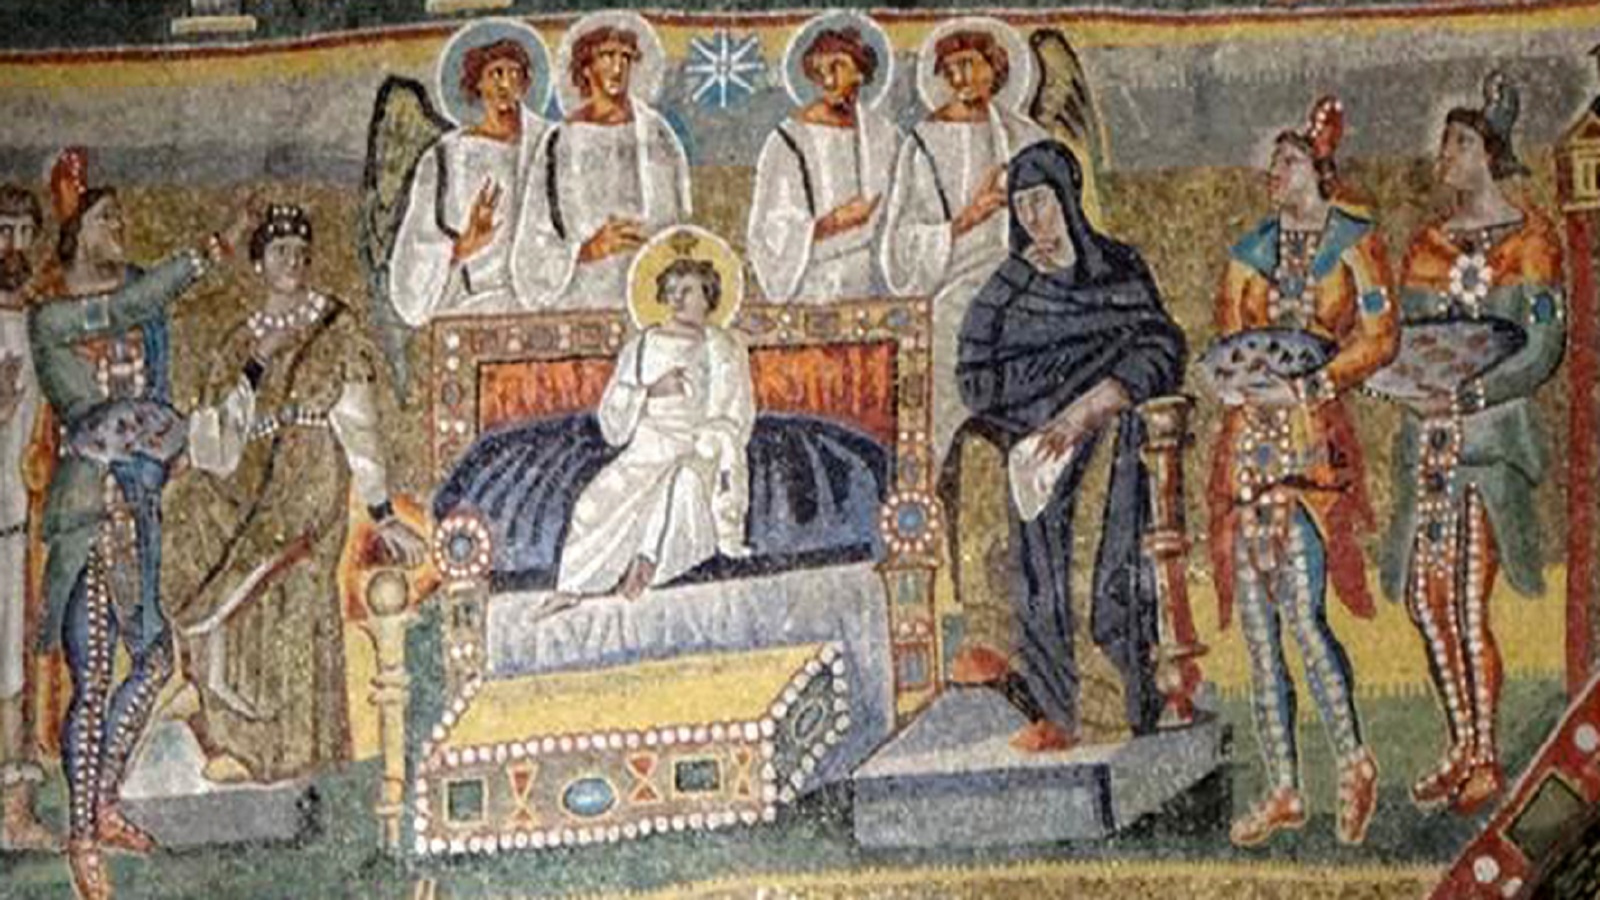  زيارة المجوس، فسيفساء من كنيسة القديسة مريم العظمى، روما، النصف الأول من القرن الخامس.